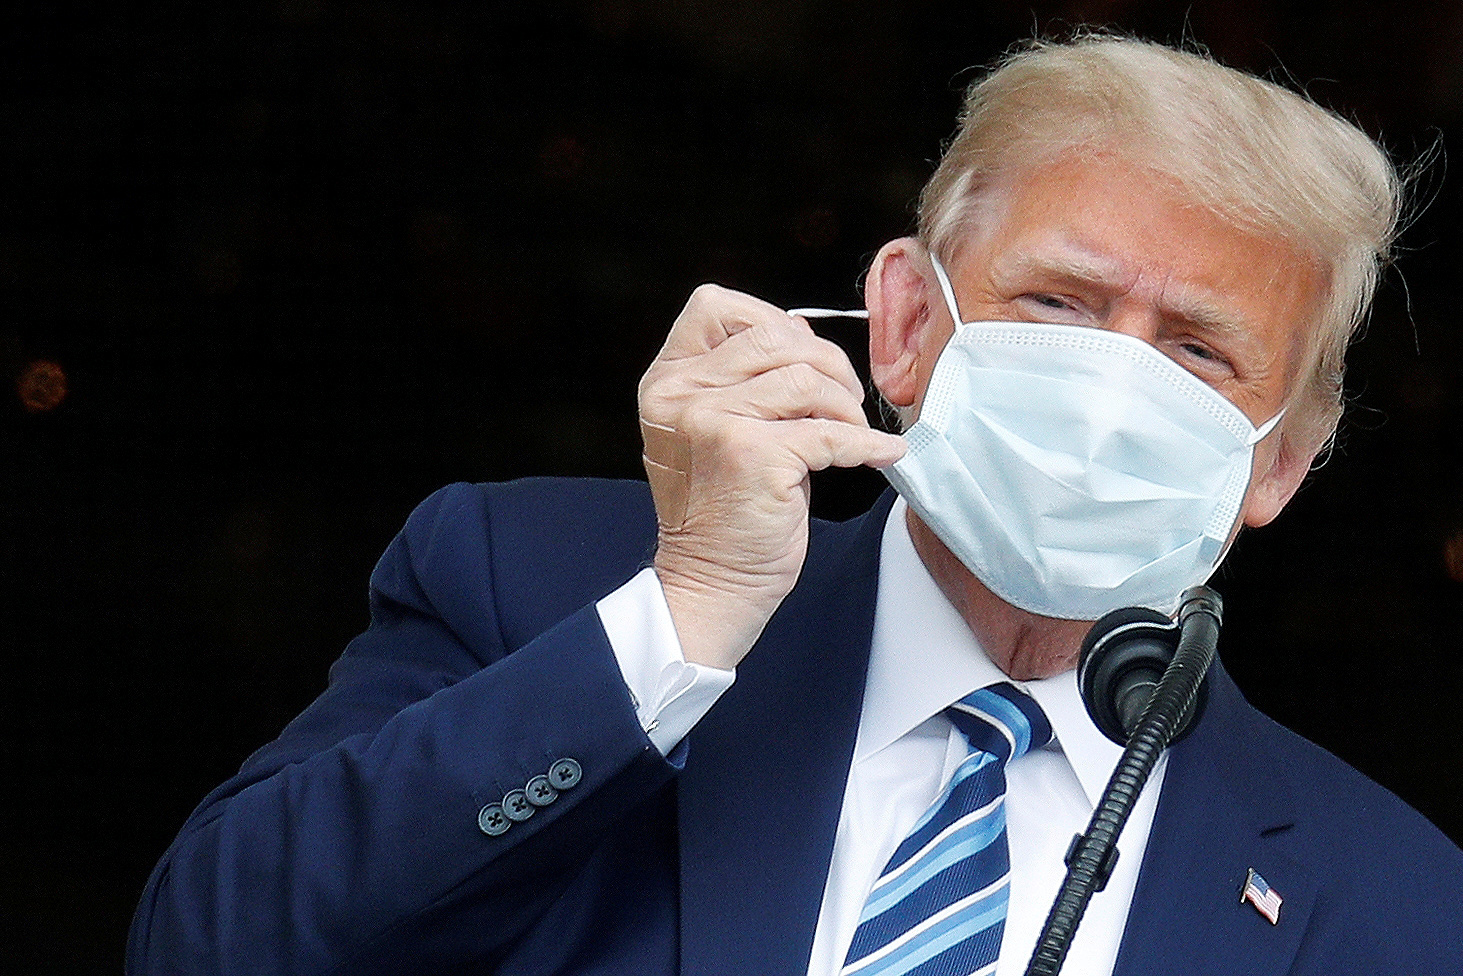 Neurólogo explicó por qué Donald Trump no tiene que usar mascarilla